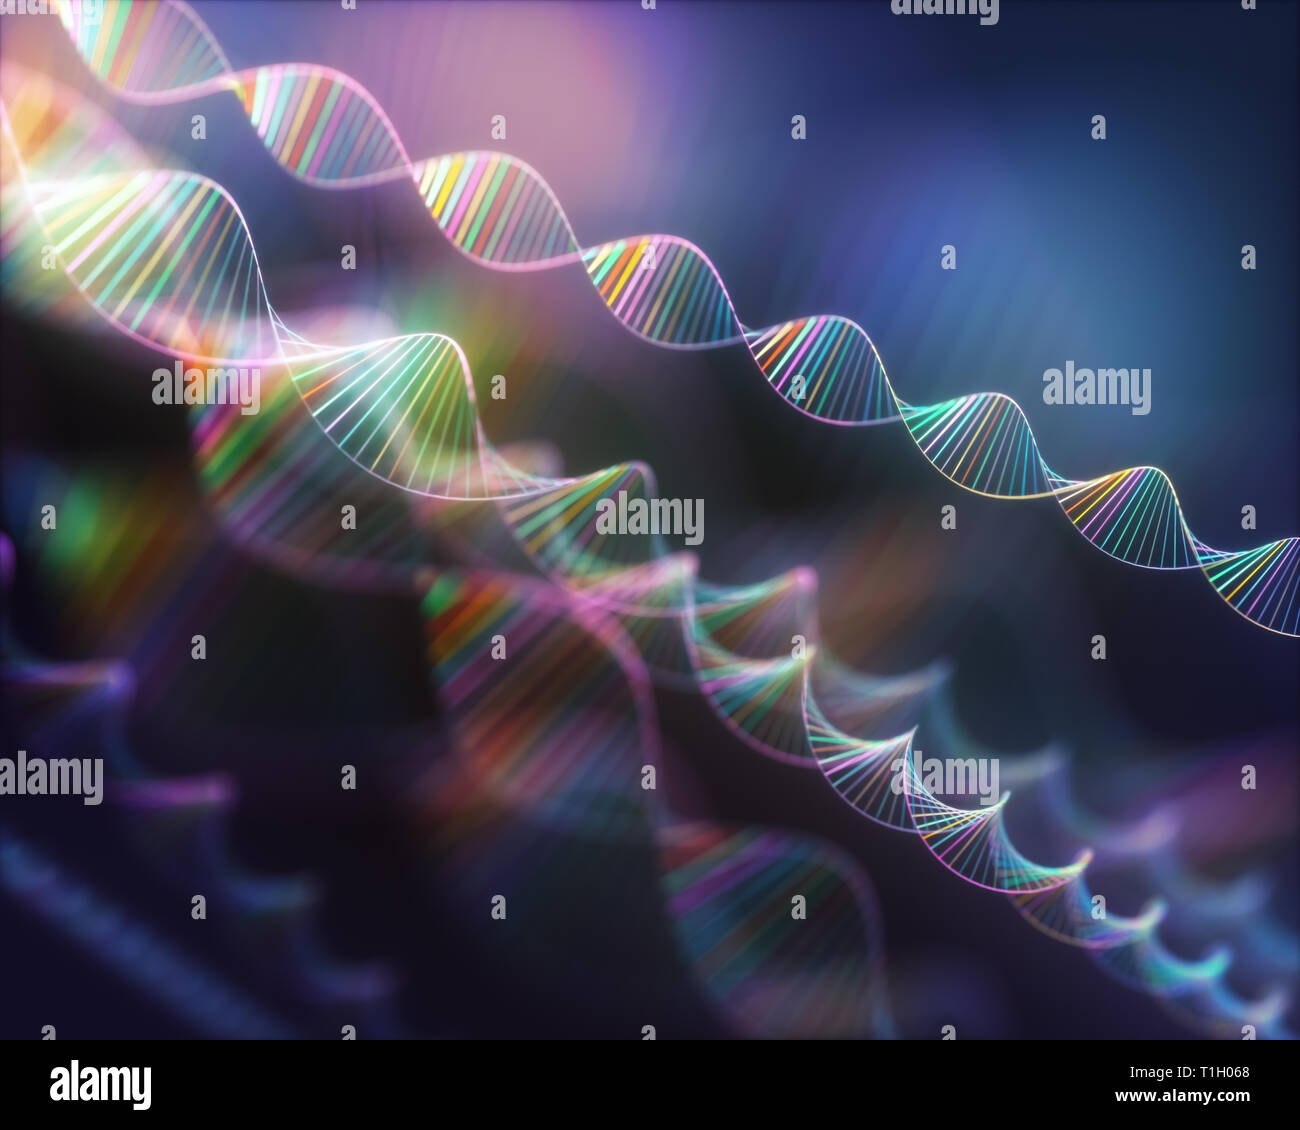 Bild von den genetischen Code der DNA. Konzept Bild für den Einsatz als Hintergrund. Farbige 3D-Darstellung. Stockfoto